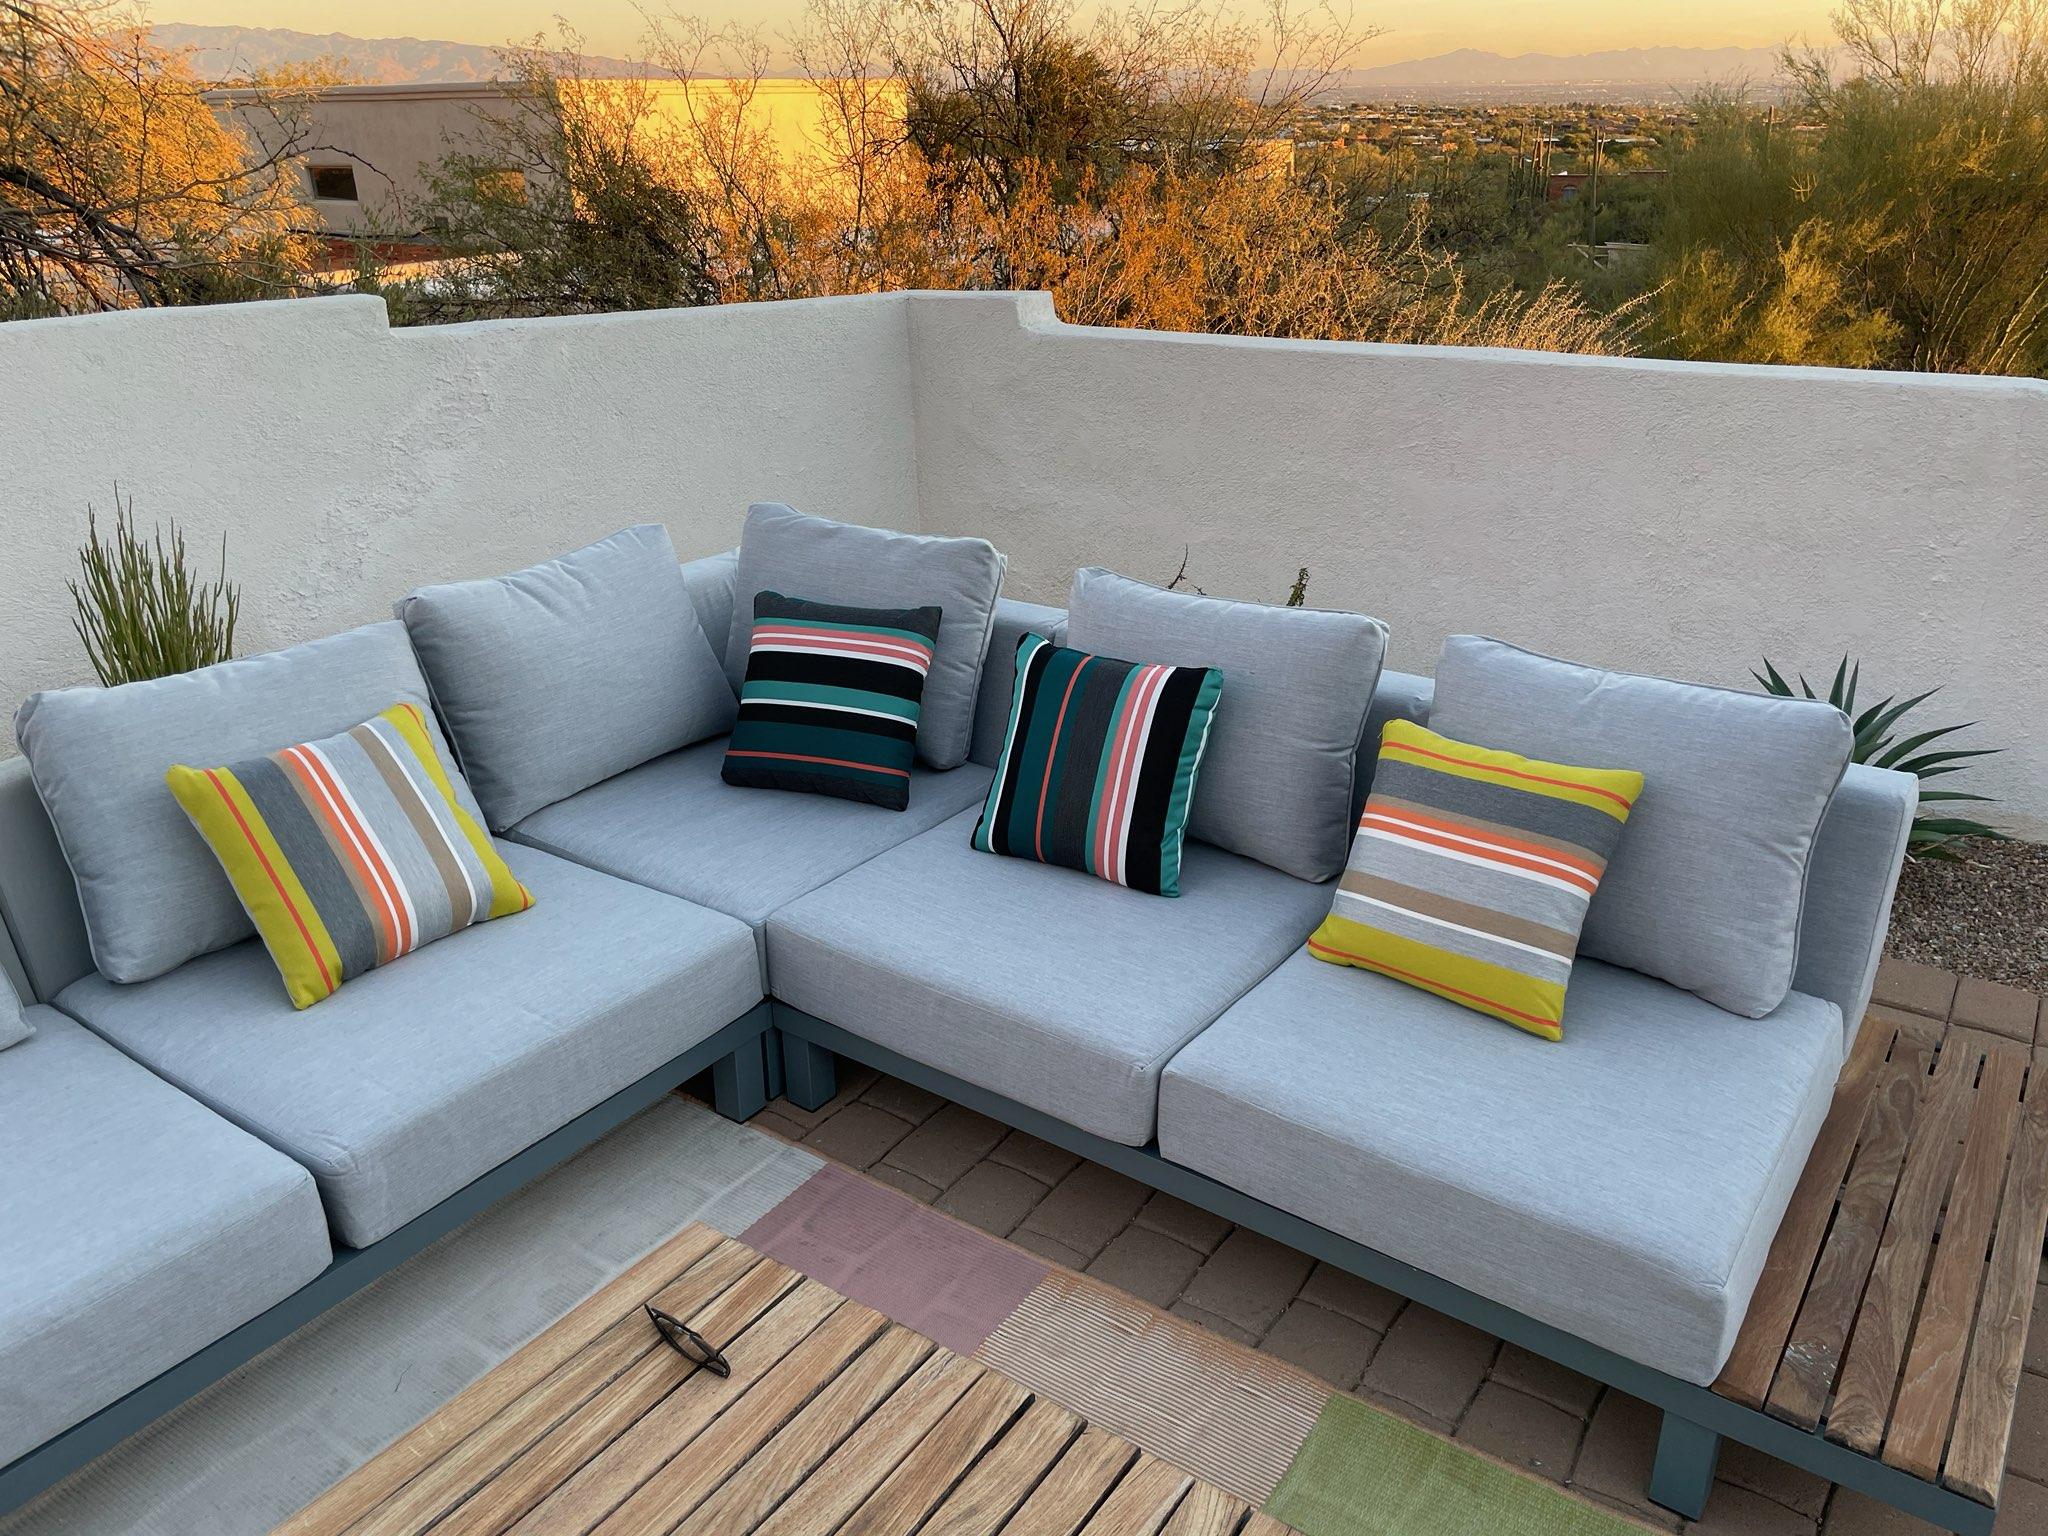 Sunbrella for Outdoor Upholstery - Tucson, AZ Custom Upholstery